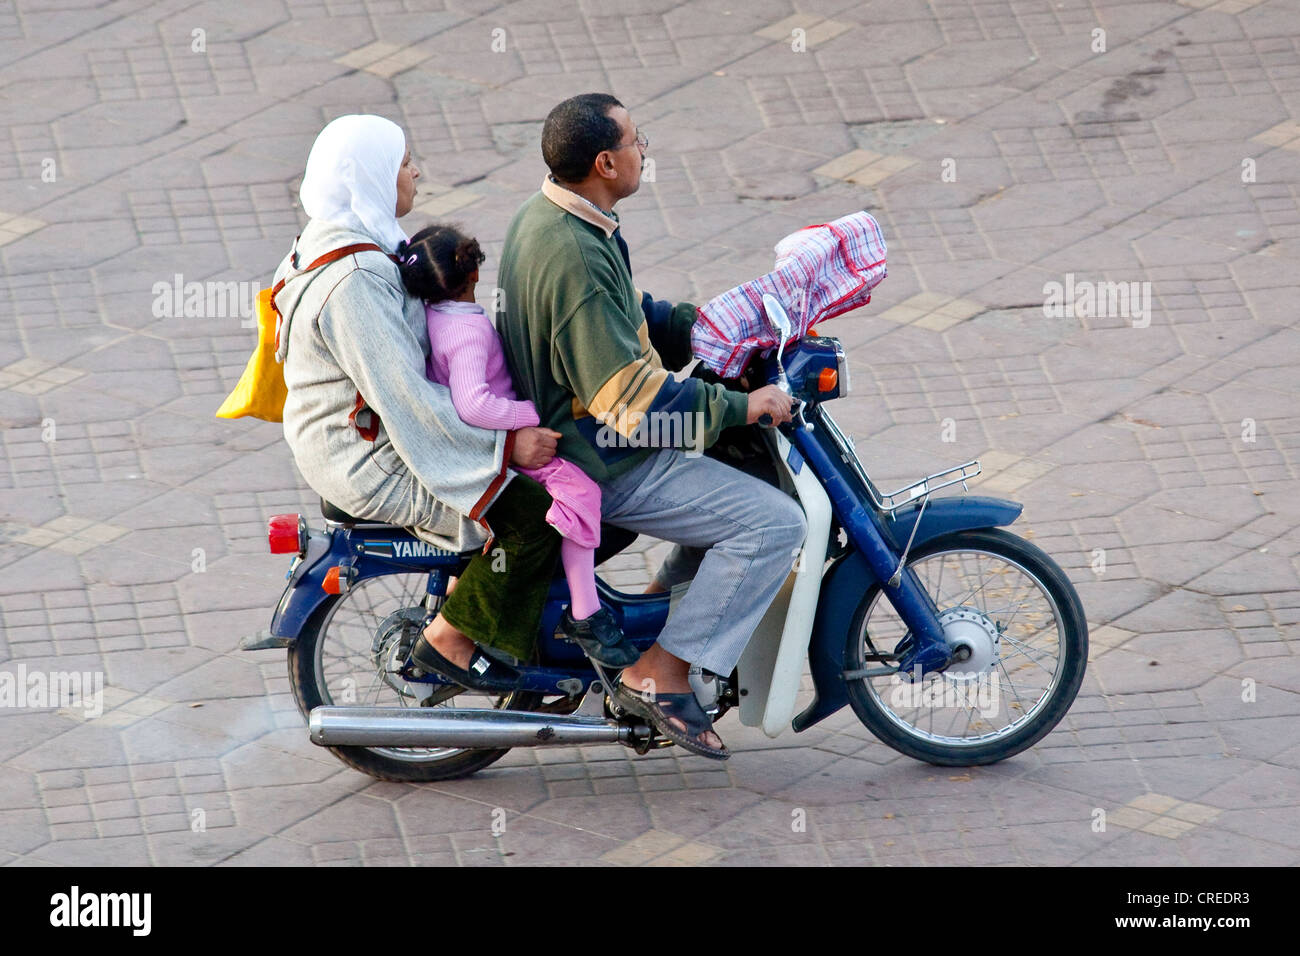 Family riding un cyclomoteur en place Djemaa el Fna, la médina, vieille ville, site du patrimoine mondial de l'UNESCO, Marrakech, Maroc, Afrique Banque D'Images